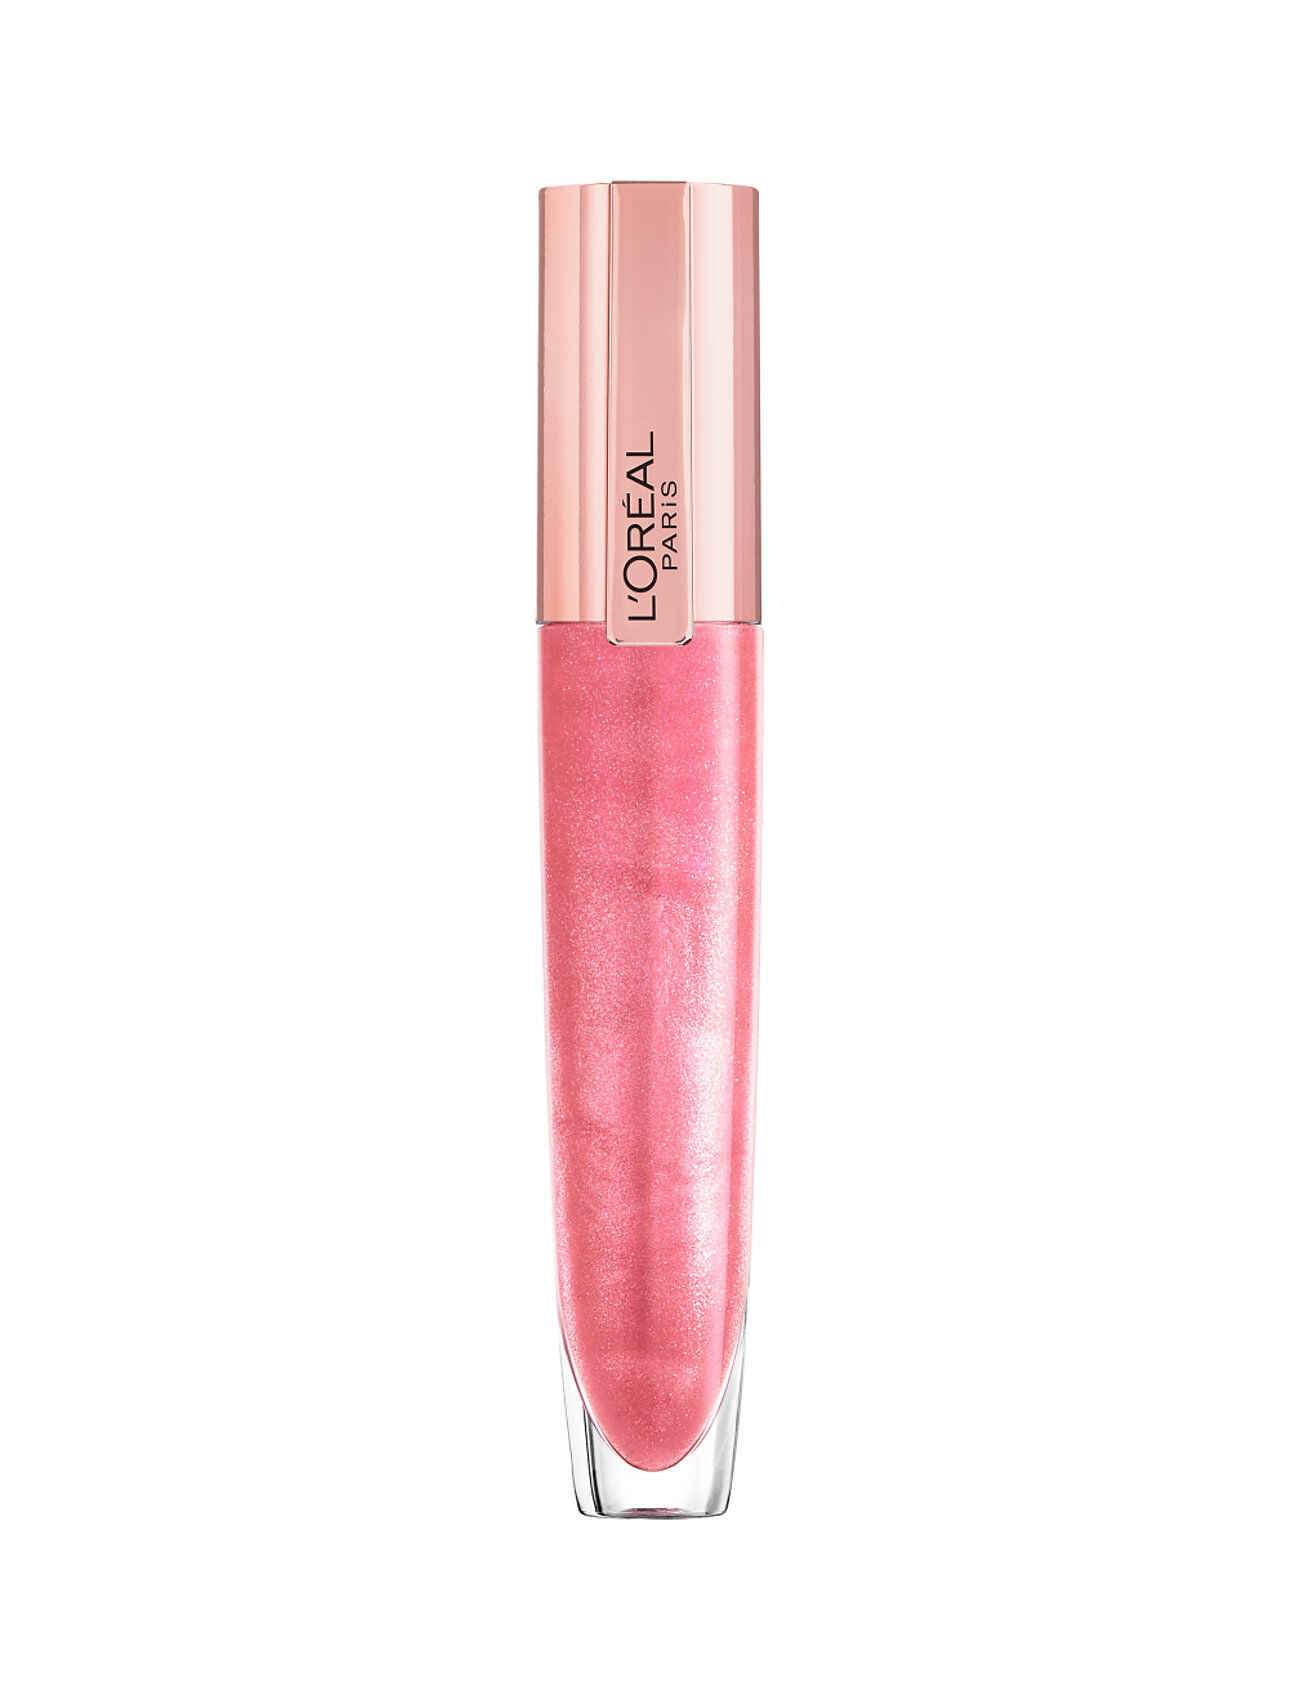 L'Oréal Paris Brilliant Signature Plump-In-Gloss I Amplify 406 7 Ml Lipgloss Sminke Rosa L'Oréal Paris